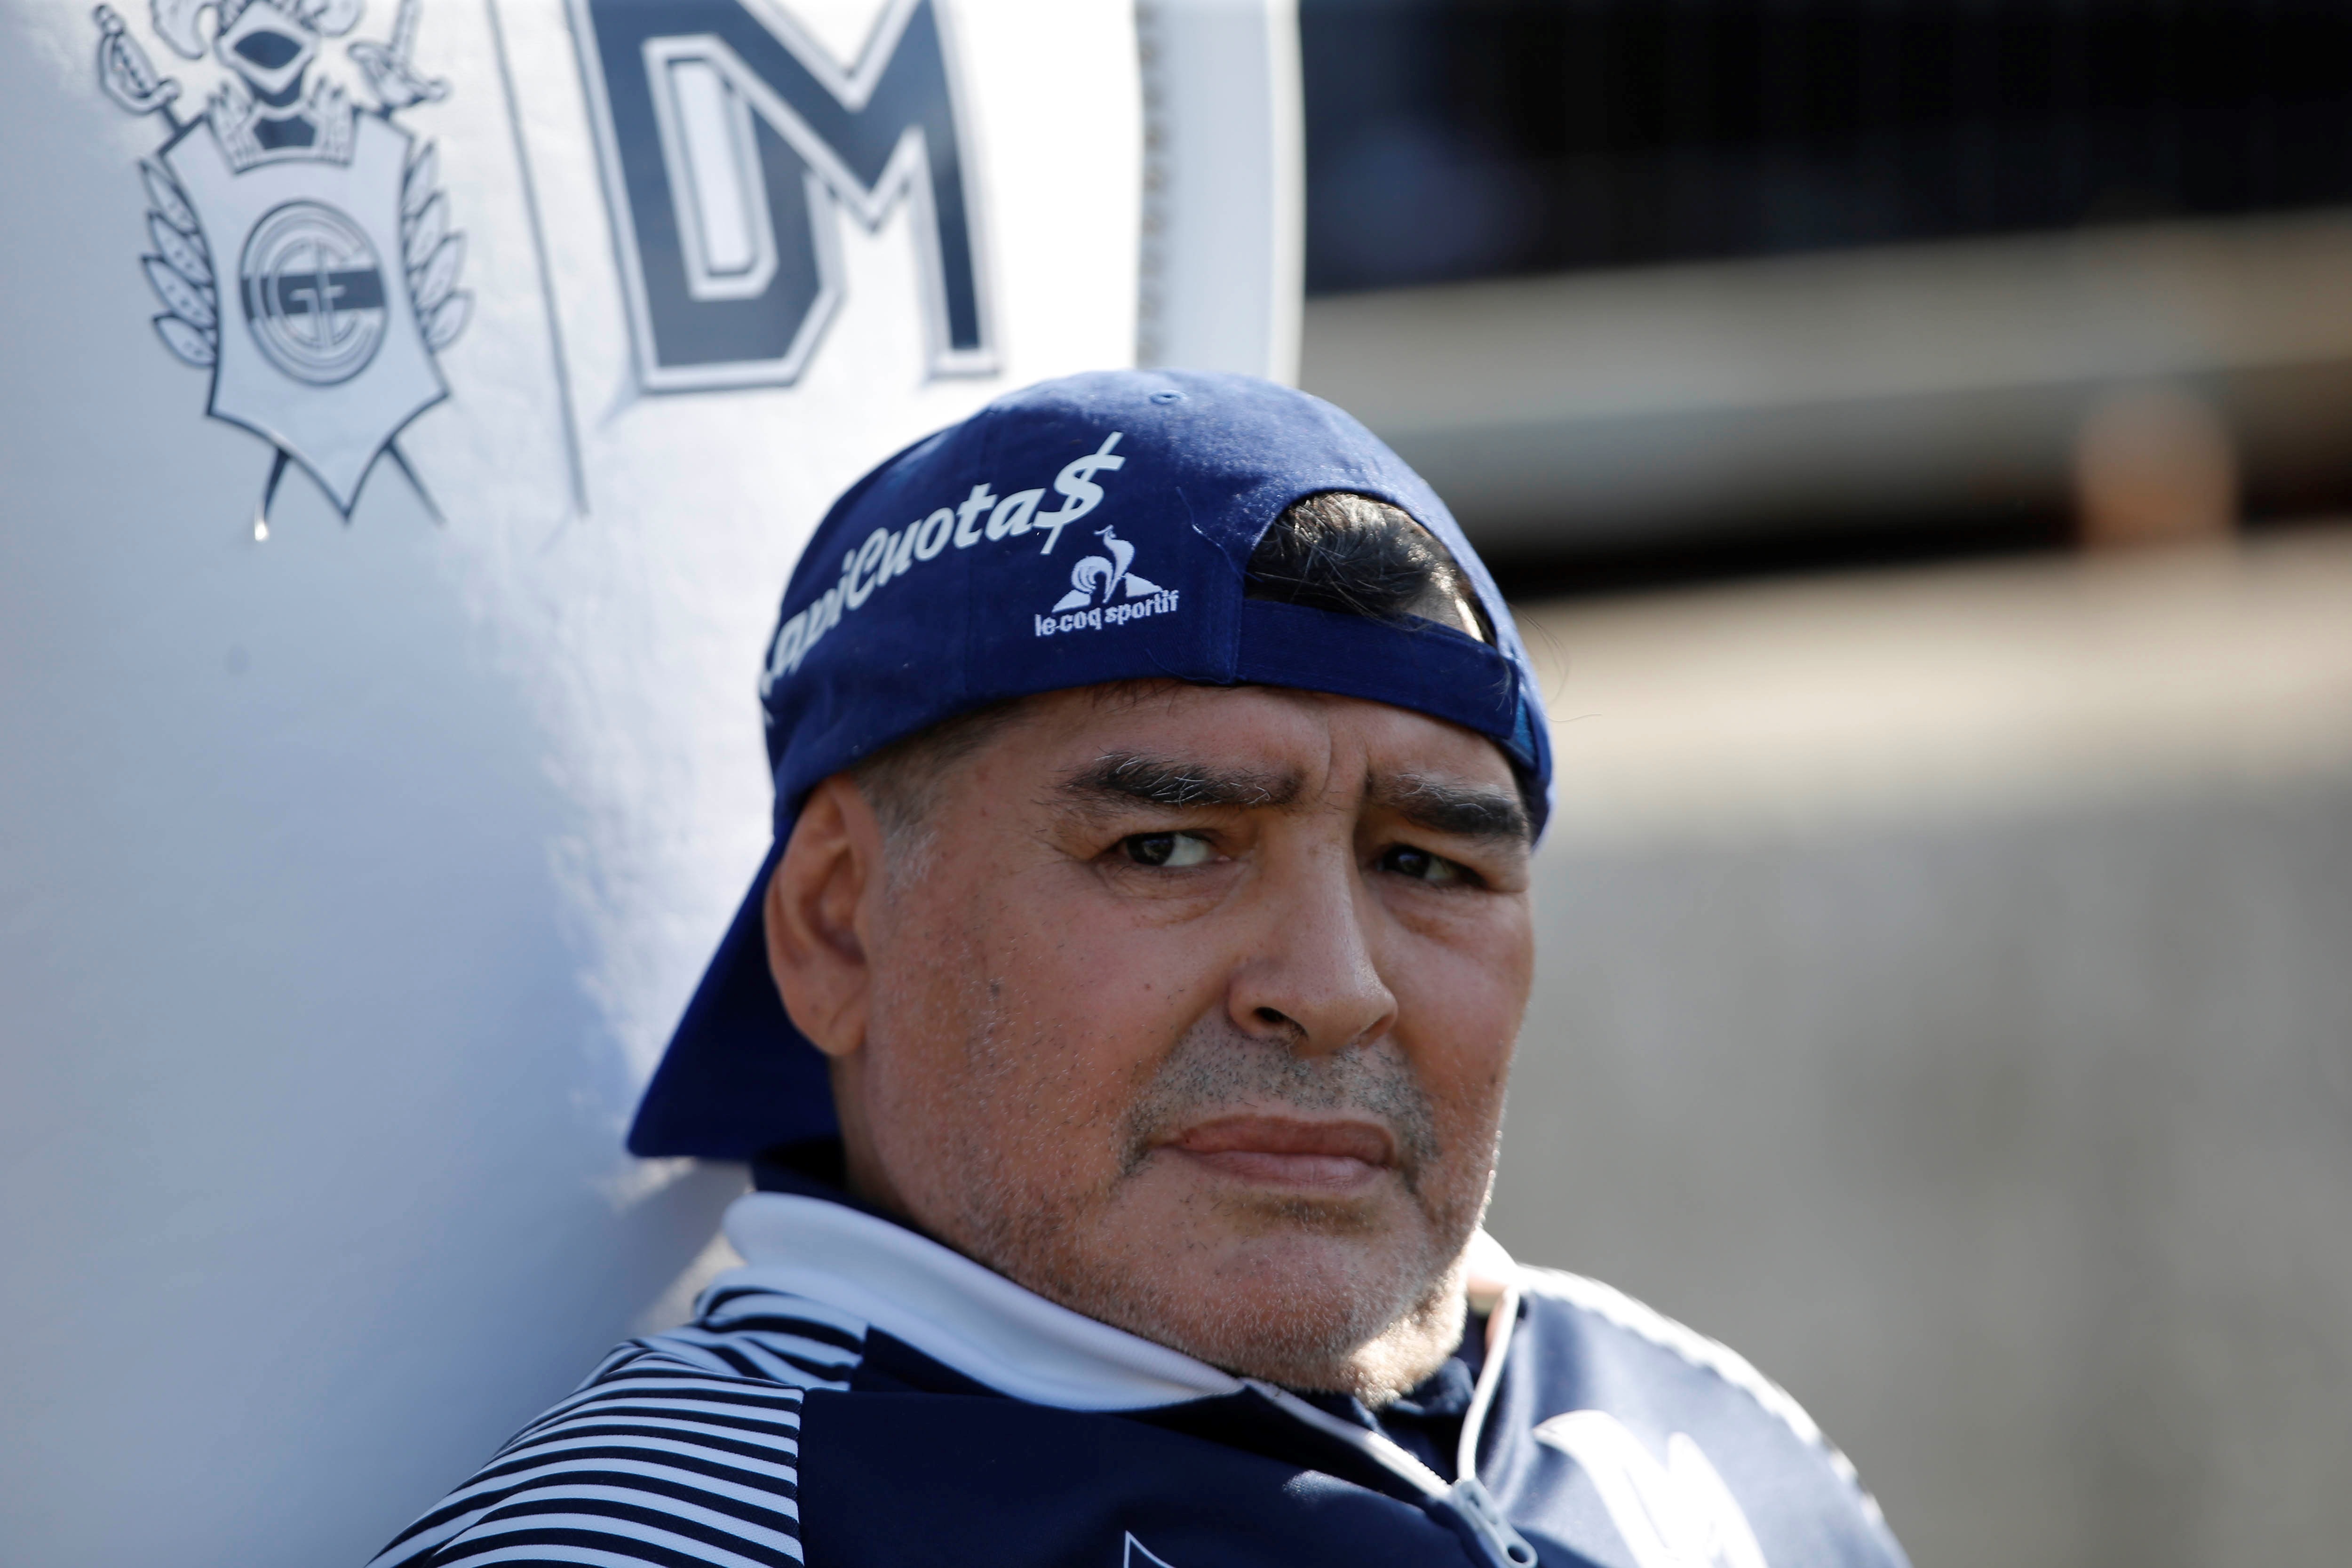 A un año de su muerte, Maradona vive en el alma del mundo fútbol